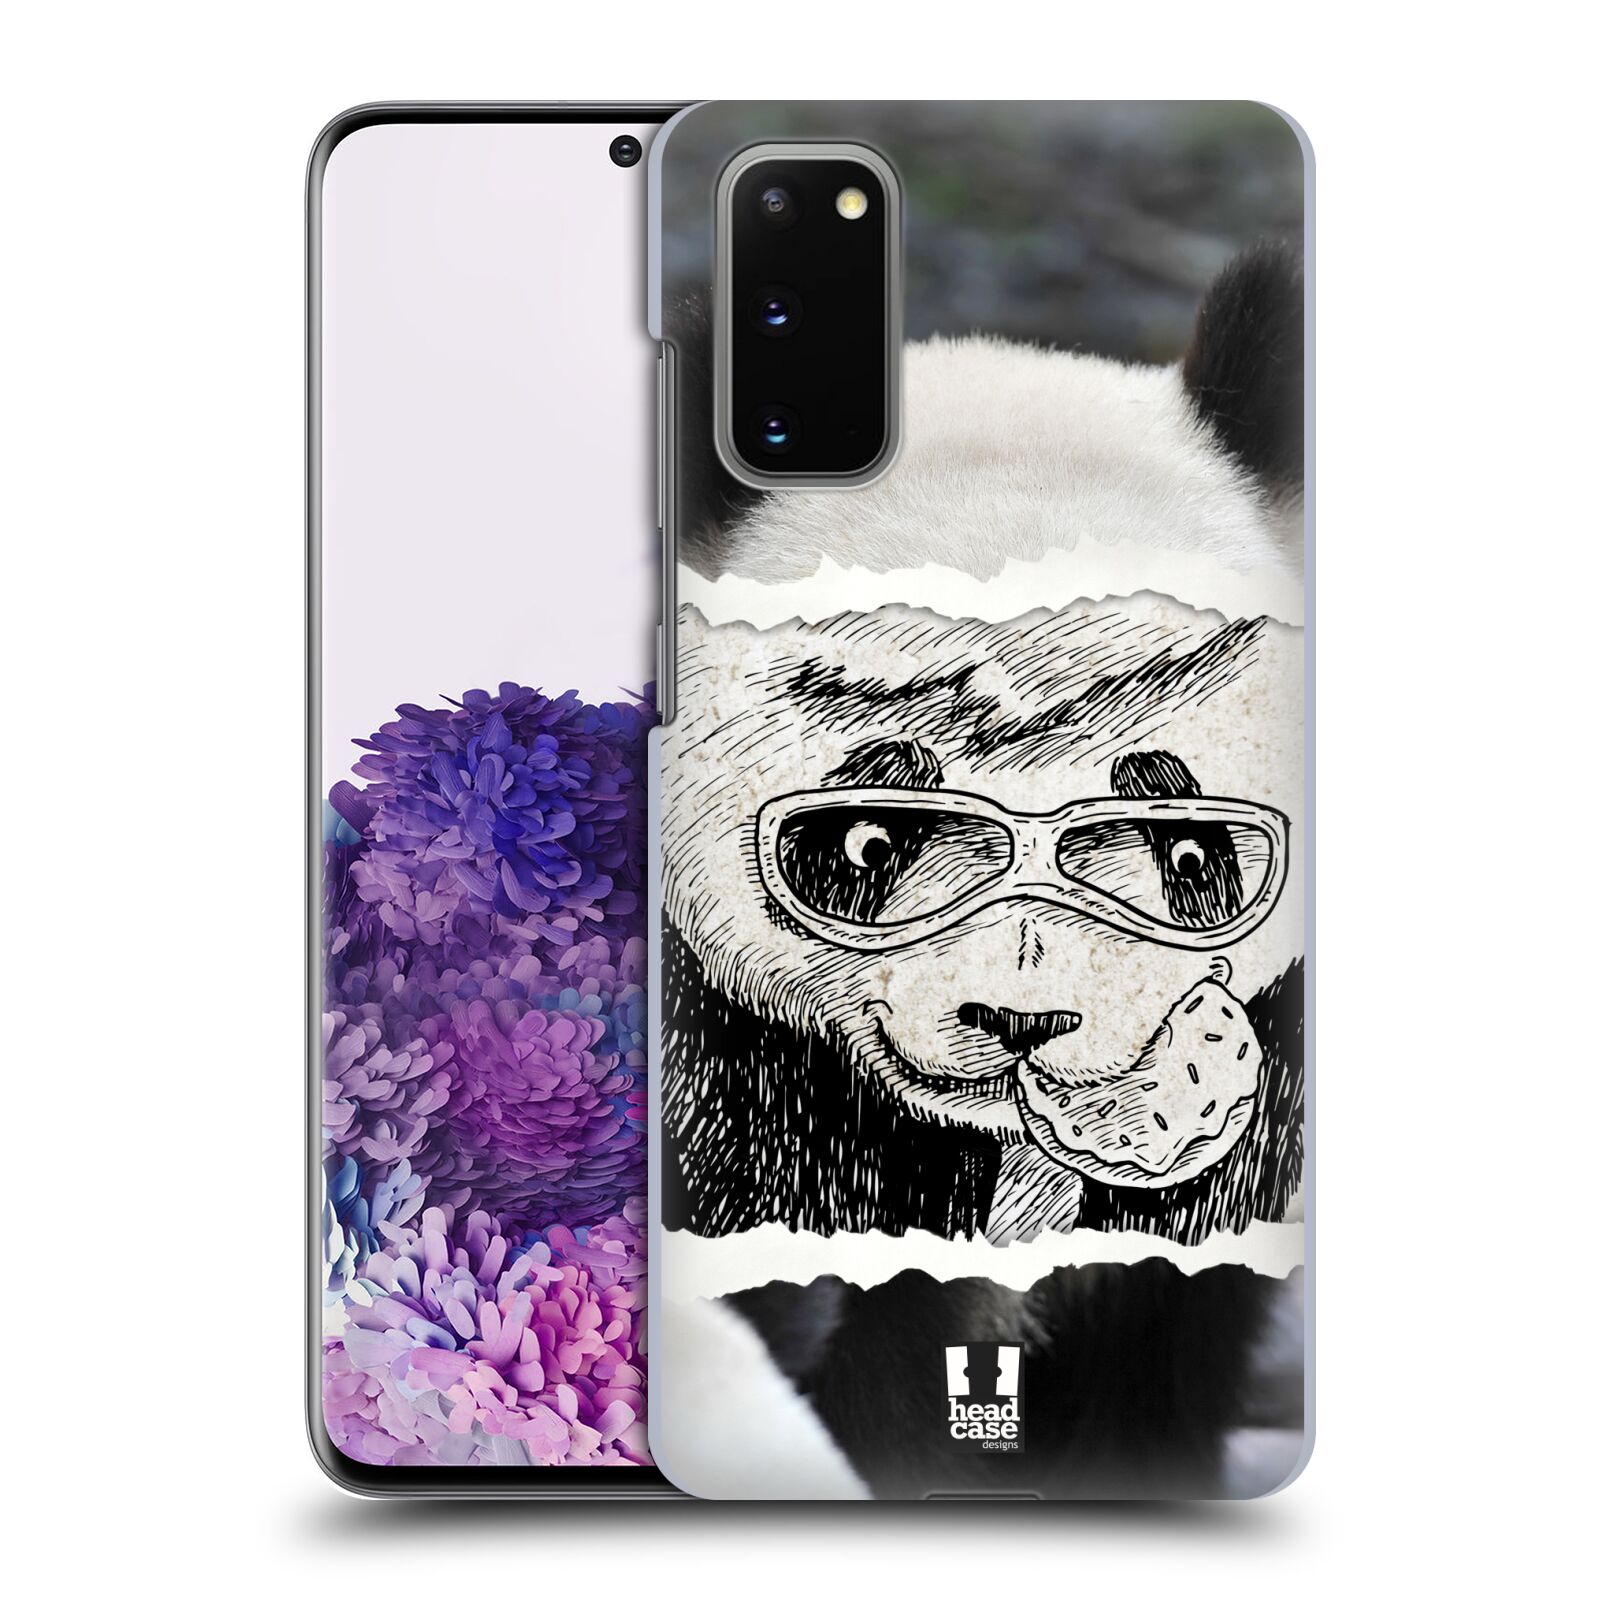 Pouzdro na mobil Samsung Galaxy S20 - HEAD CASE - vzor zvířata koláž roztomilá panda